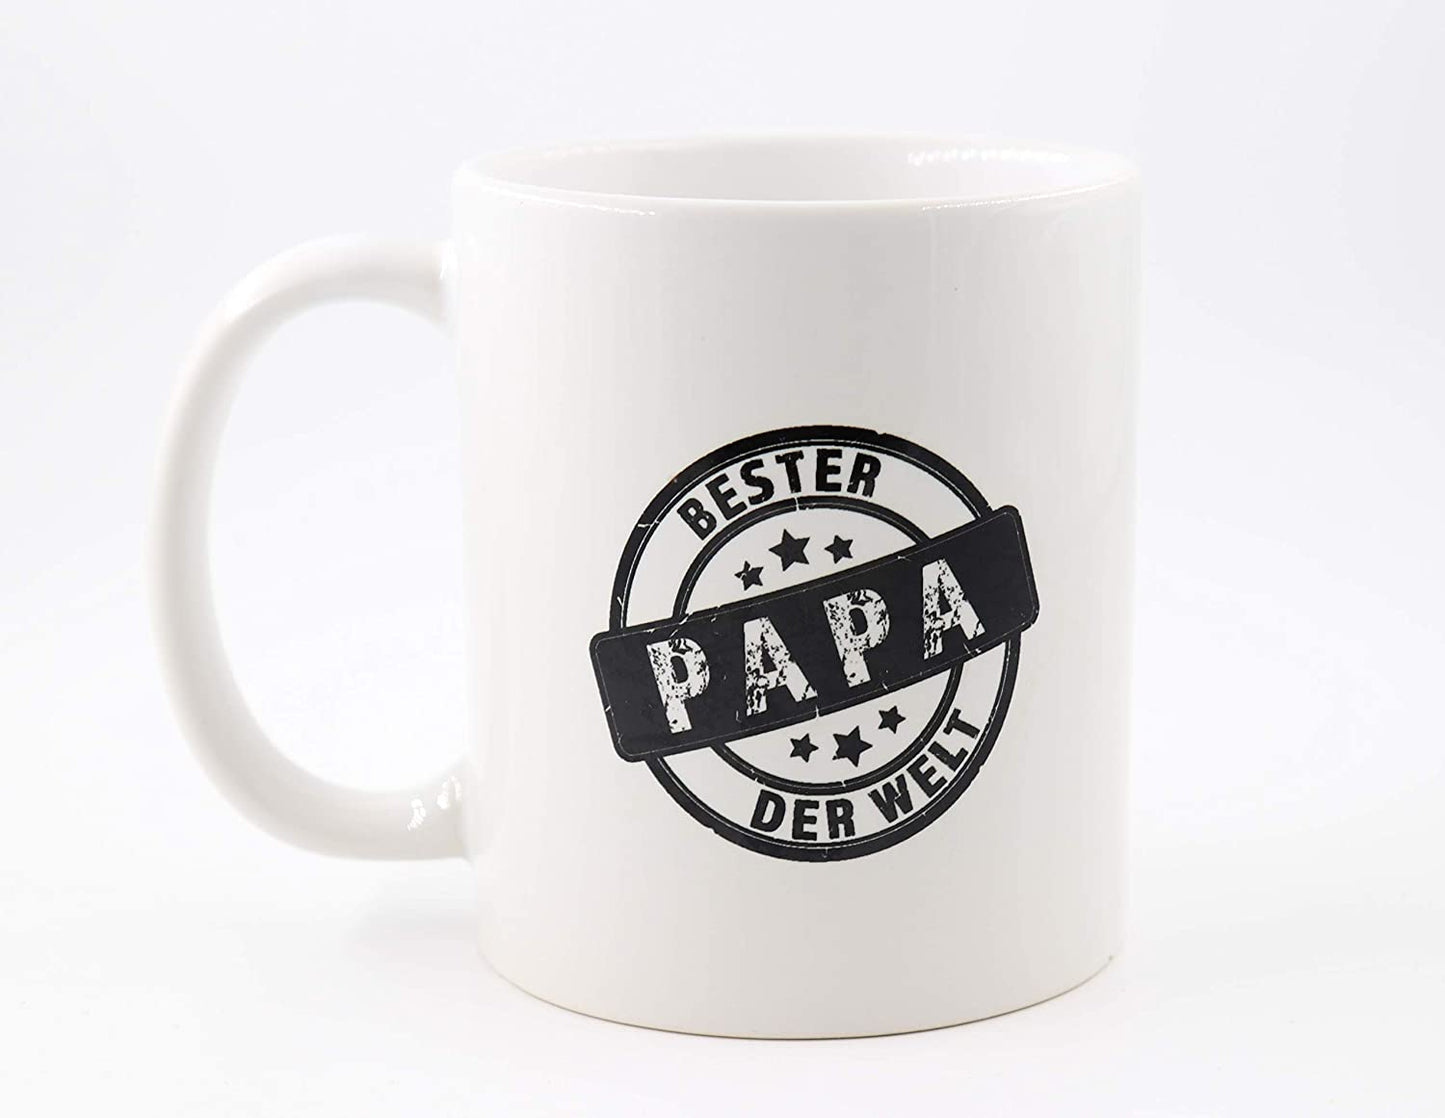 PICSonPAPER Tasse mit Spruch Bester Papa der Welt, Vatertagsgeschenk, Kaffeetasse, Keramiktasse, Tasse mit Spruch, Tasse Papa (Bester)